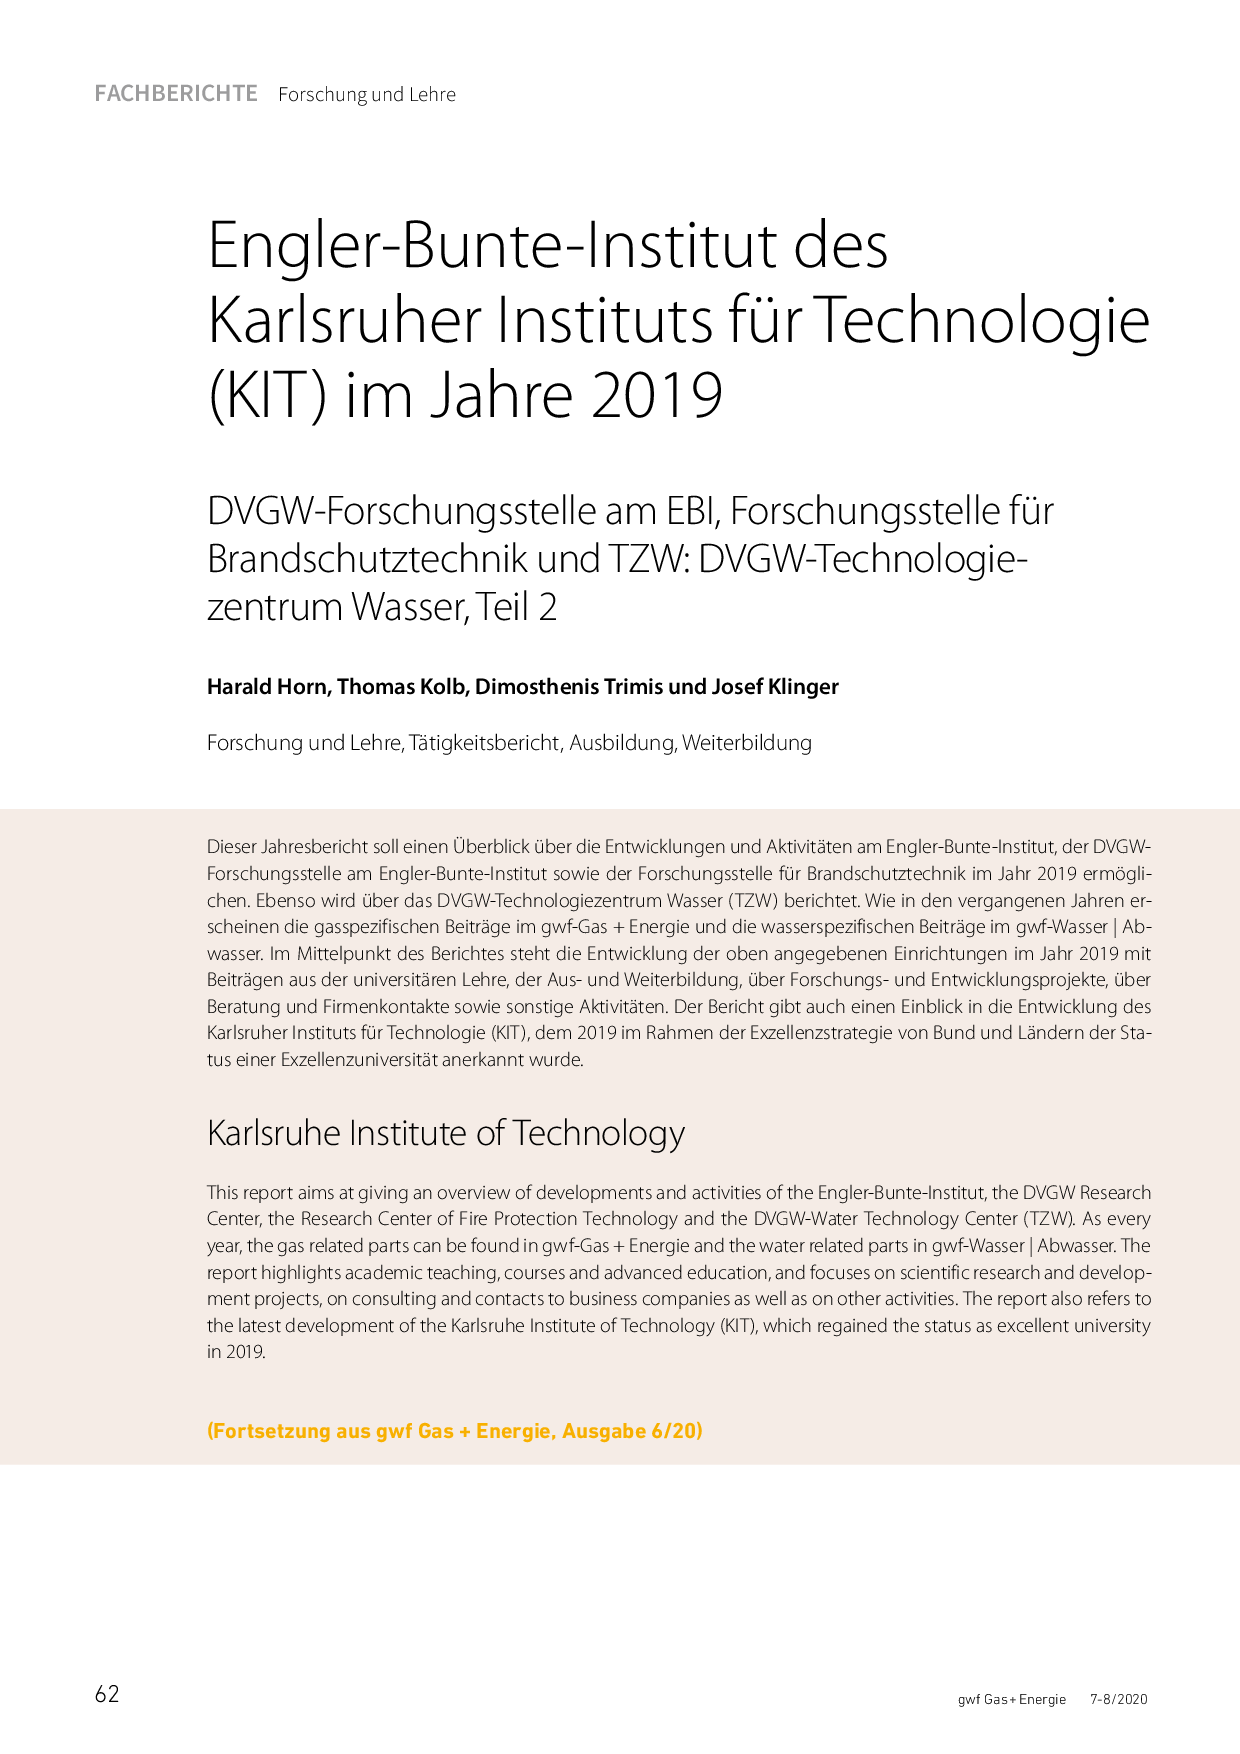 Engler-Bunte-Institut des Karlsruher Instituts für Technologie (KIT) im Jahre 2019